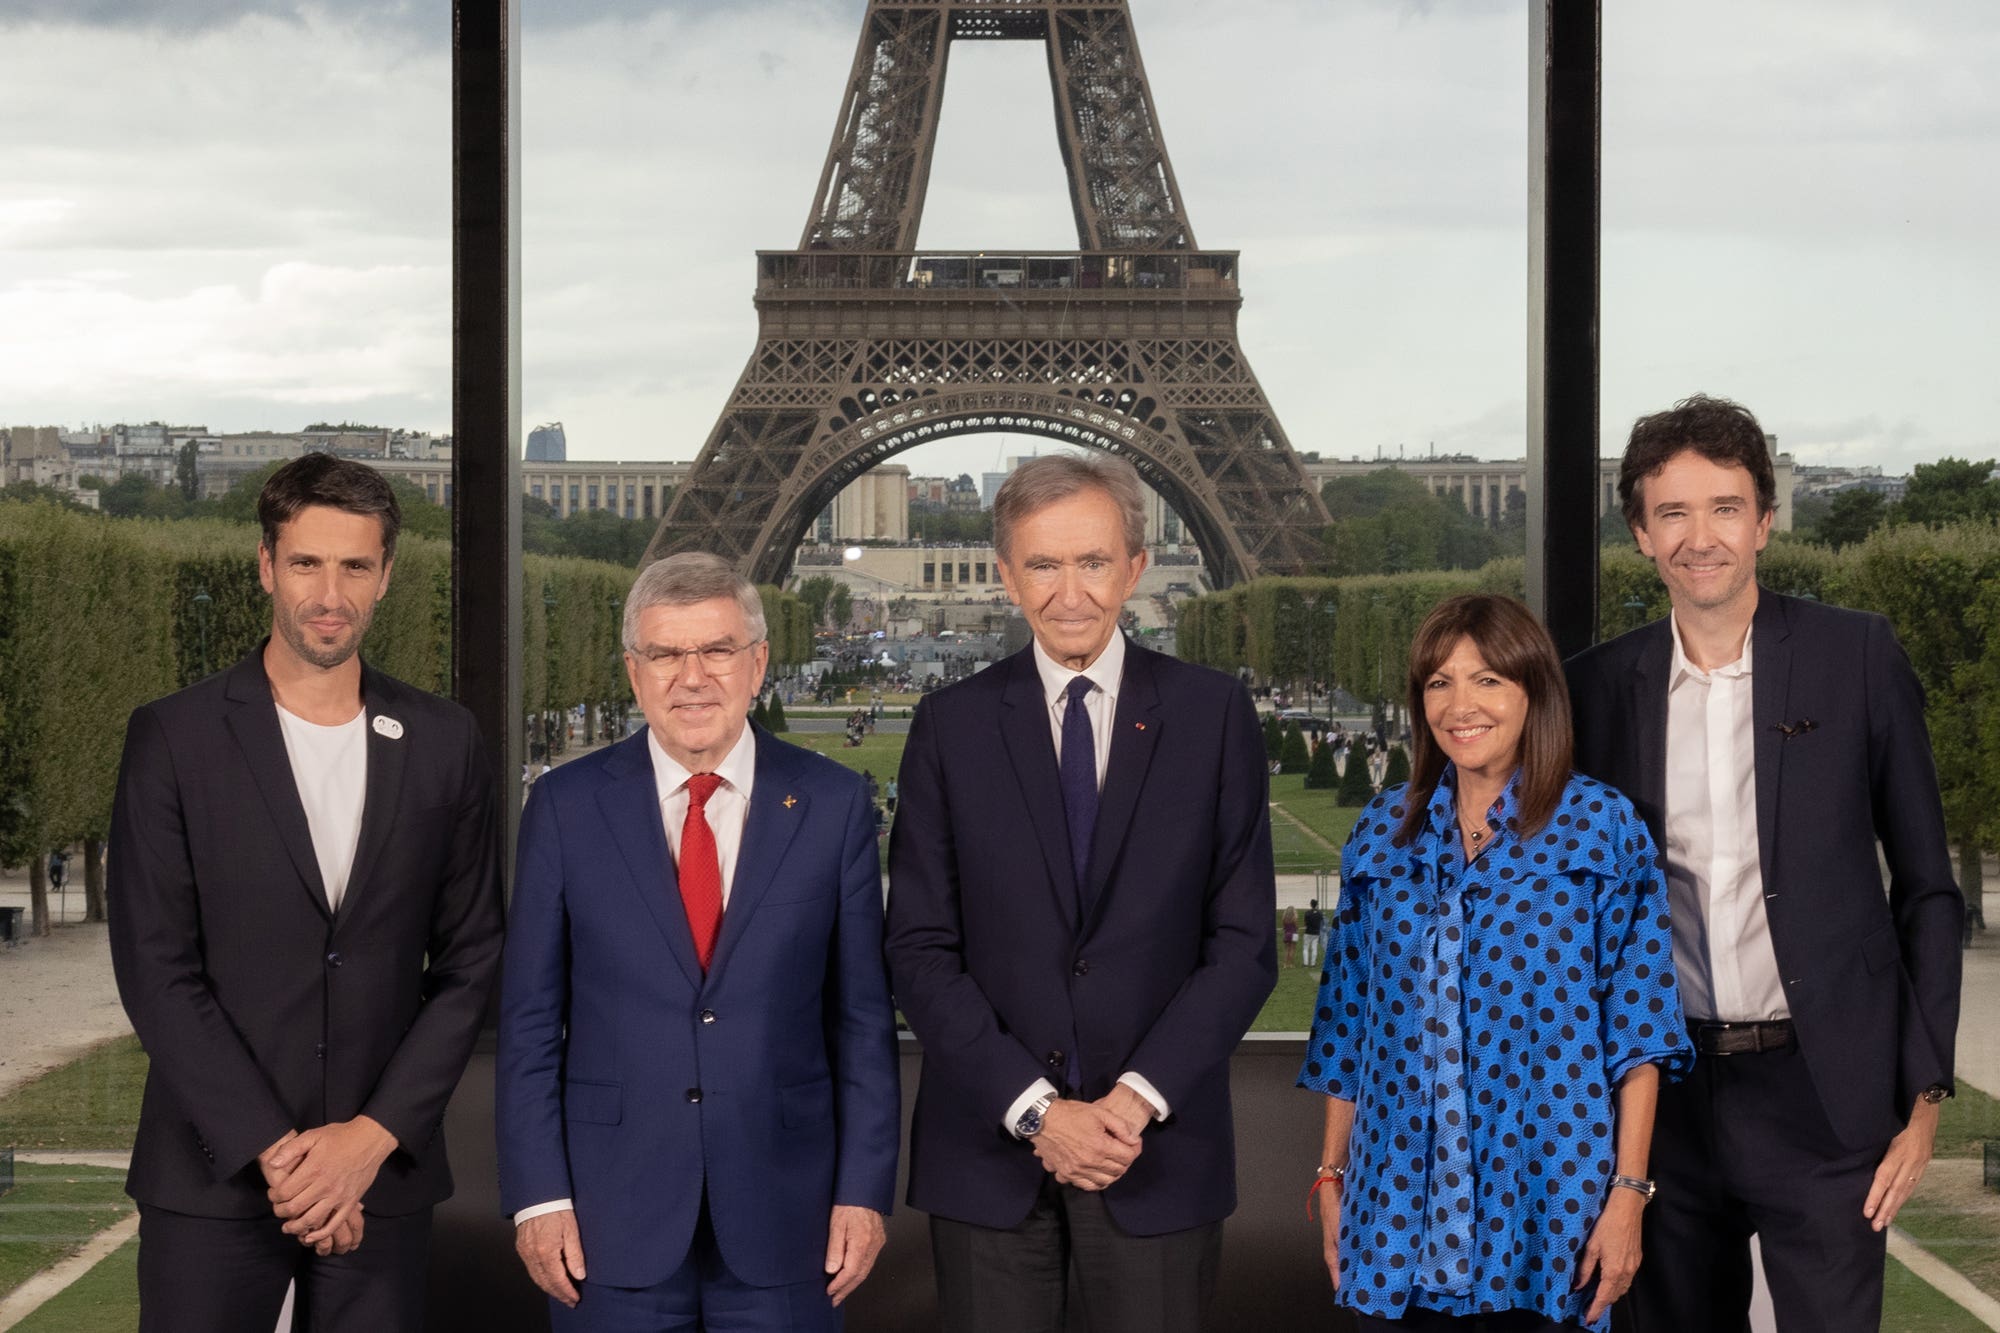 LVMH's CEO Bernard Arnault announces the creation of a cultural